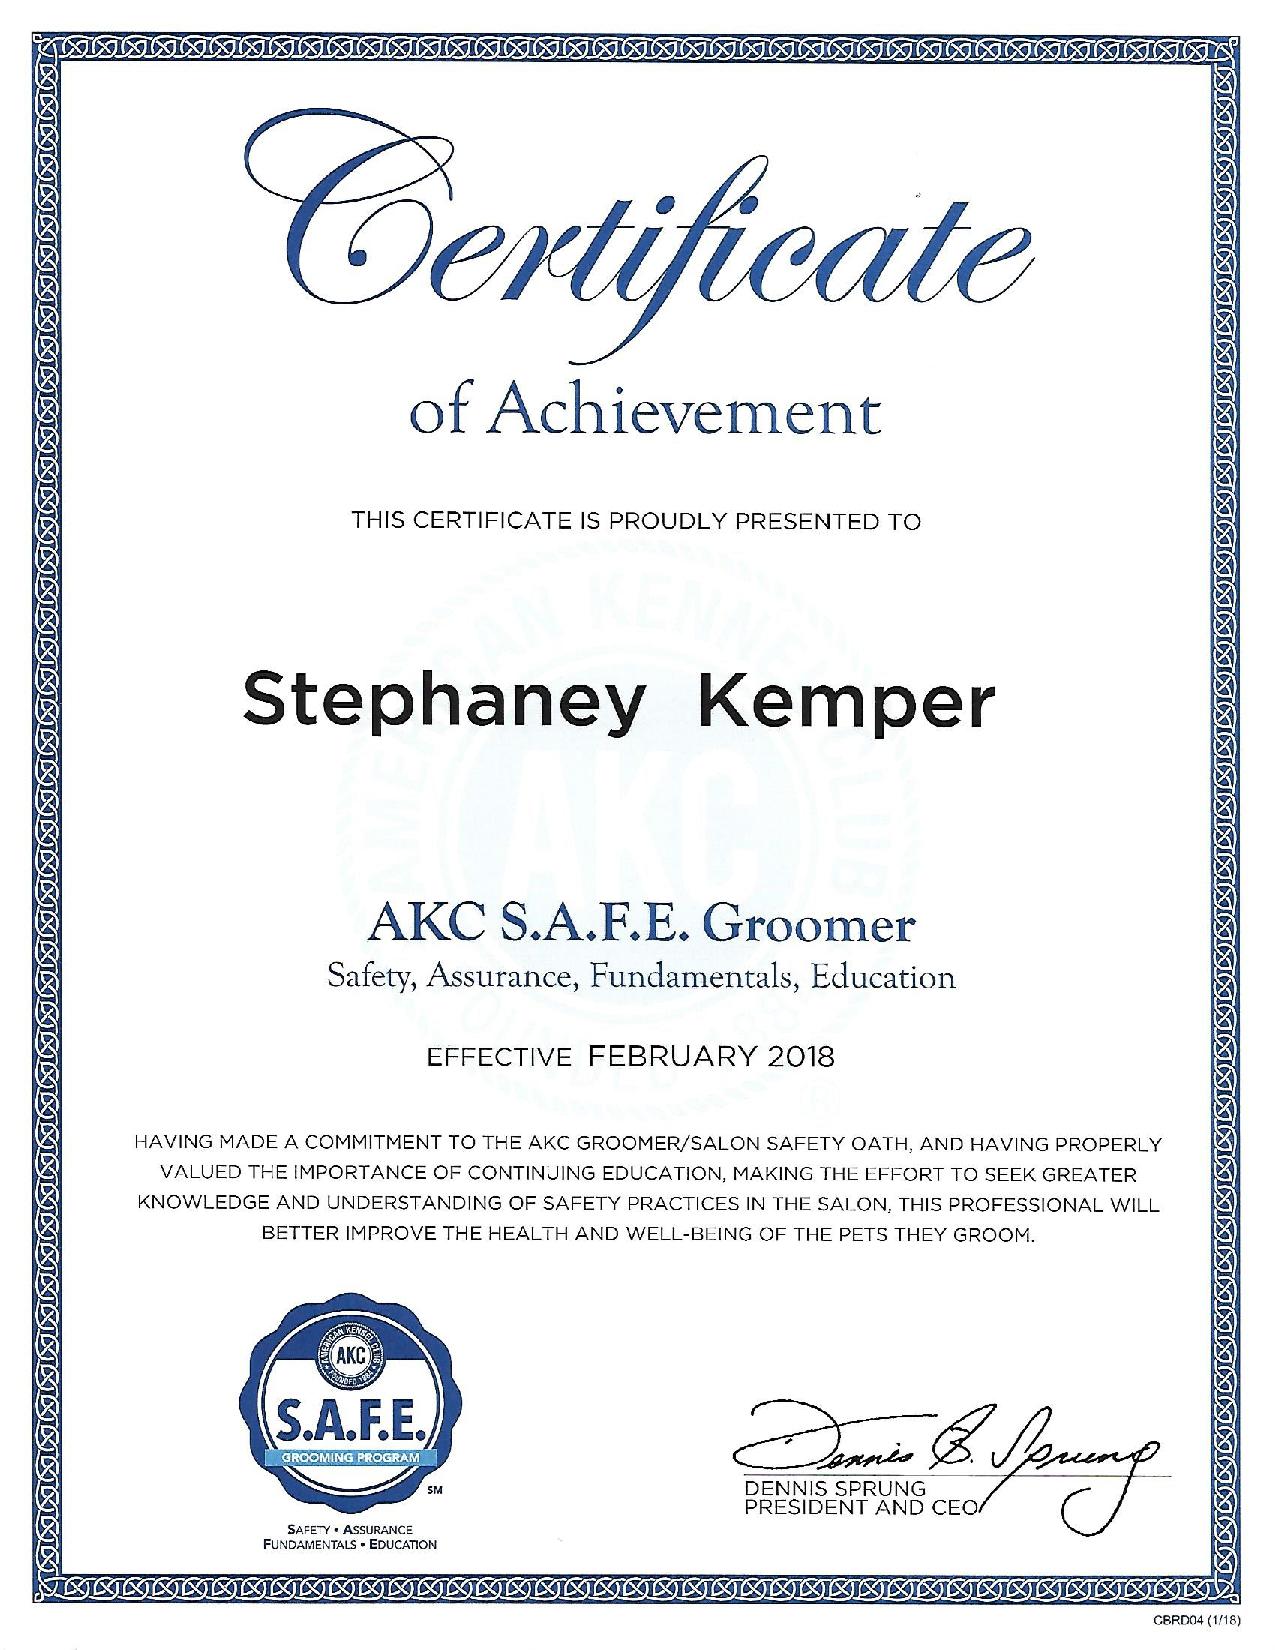 AKC-SAFE-page-001